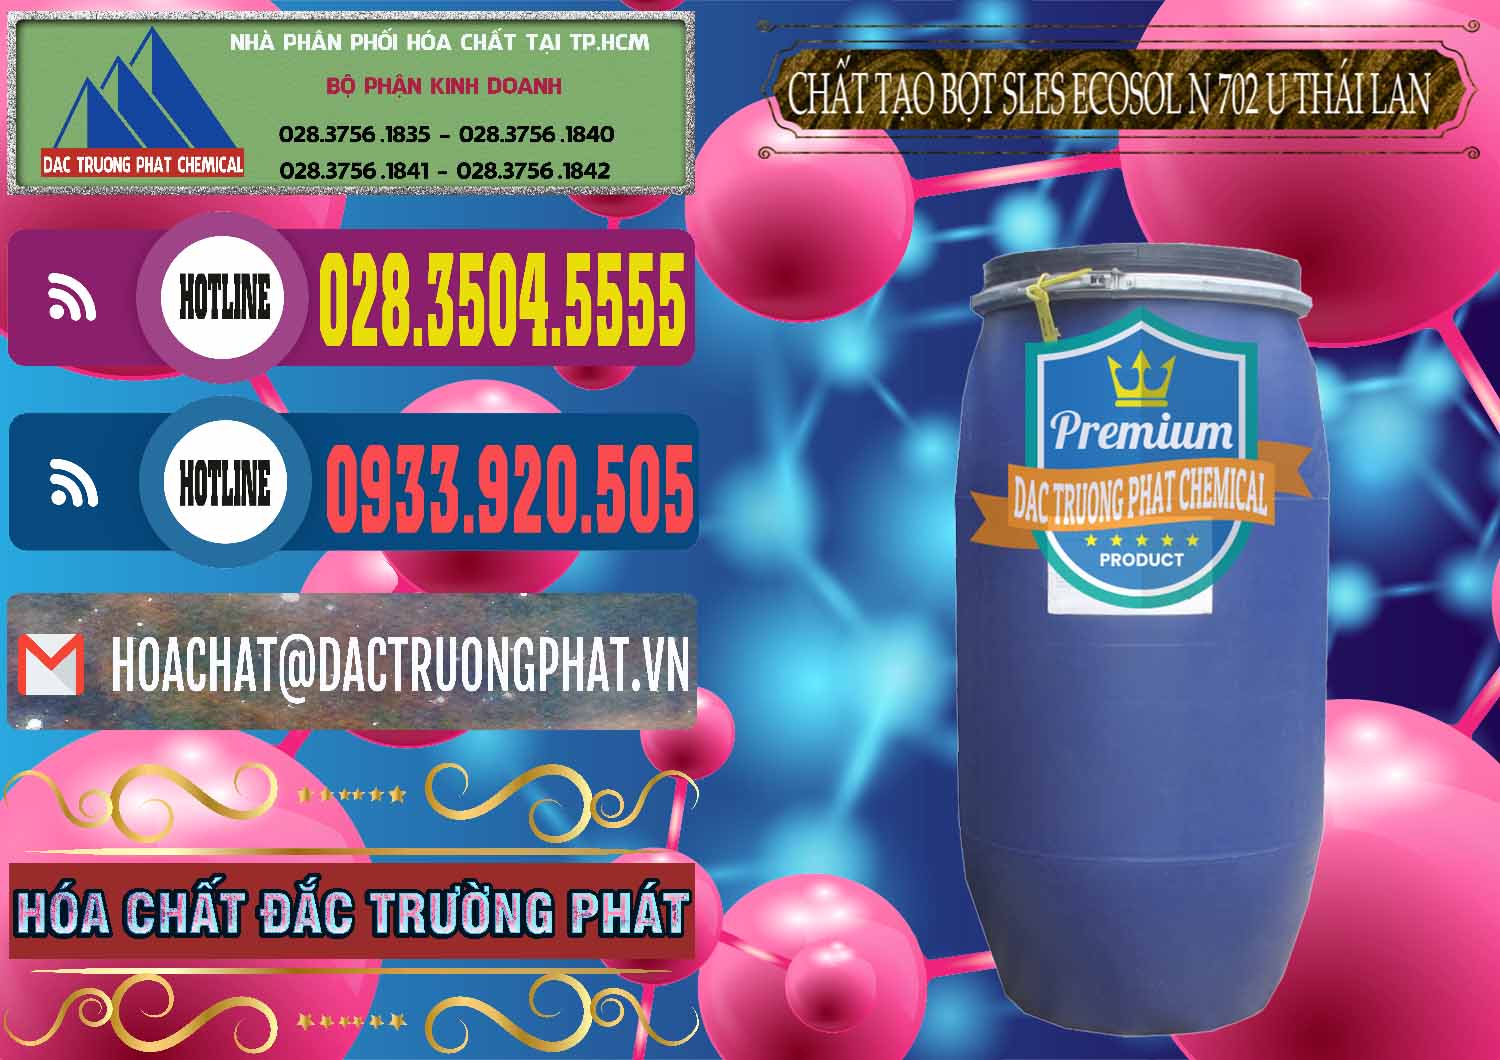 Cty chuyên bán - cung ứng Chất Tạo Bọt Sles - Sodium Lauryl Ether Sulphate Ecosol N 702 U Thái Lan - 0254 - Chuyên cung cấp _ bán hóa chất tại TP.HCM - muabanhoachat.com.vn